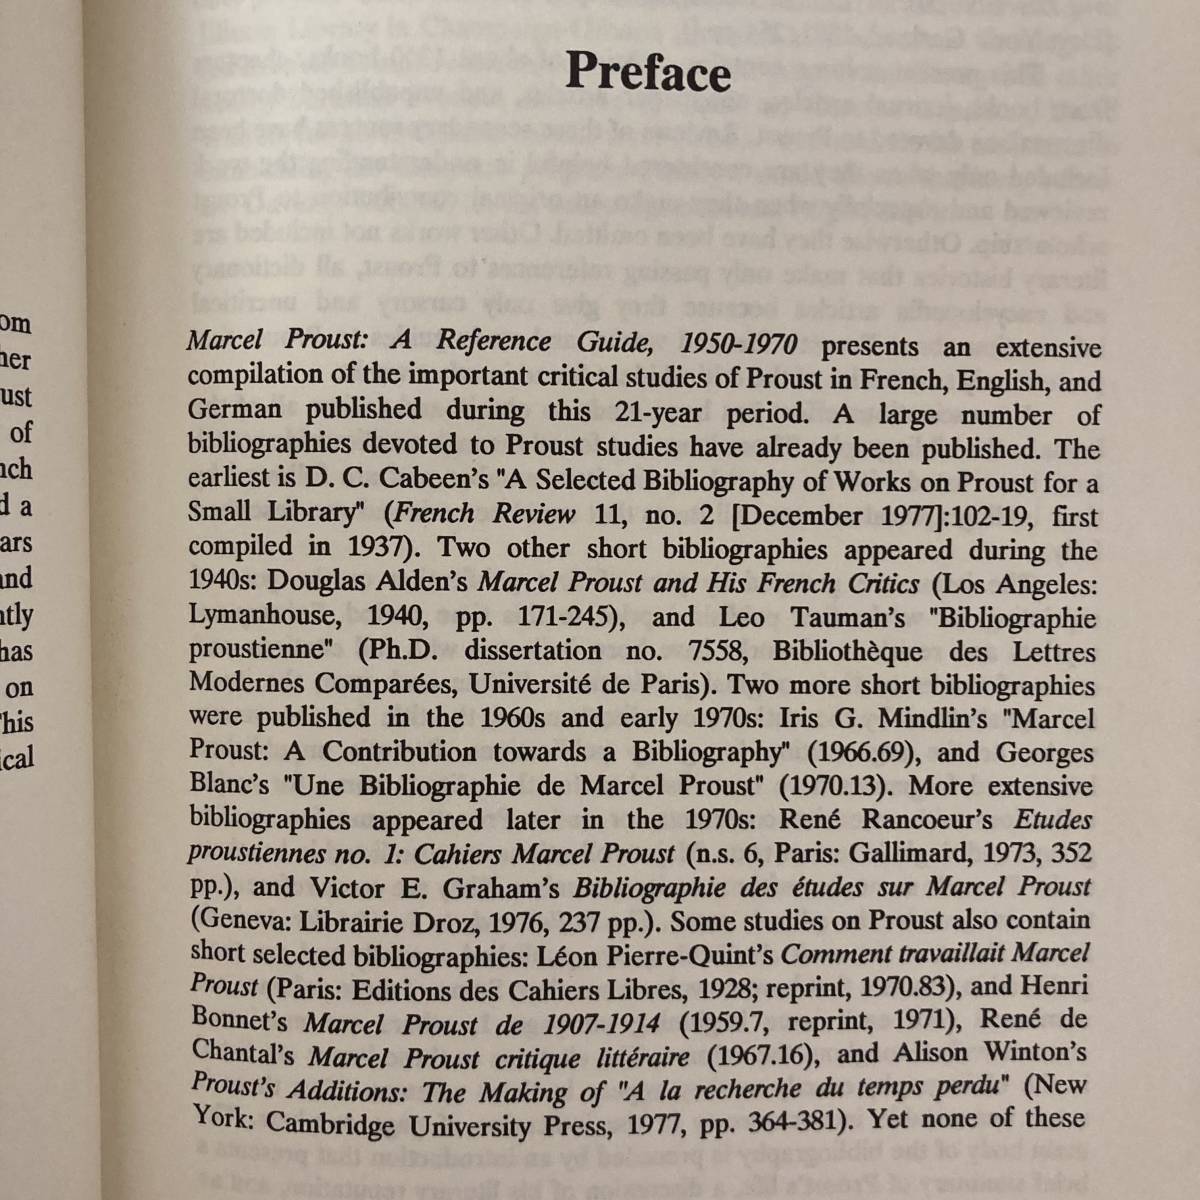 【英語洋書】Marcel Proust a reference guide 1950-1970 / Janet C.Stock（著）【マルセル・プルースト】_画像5